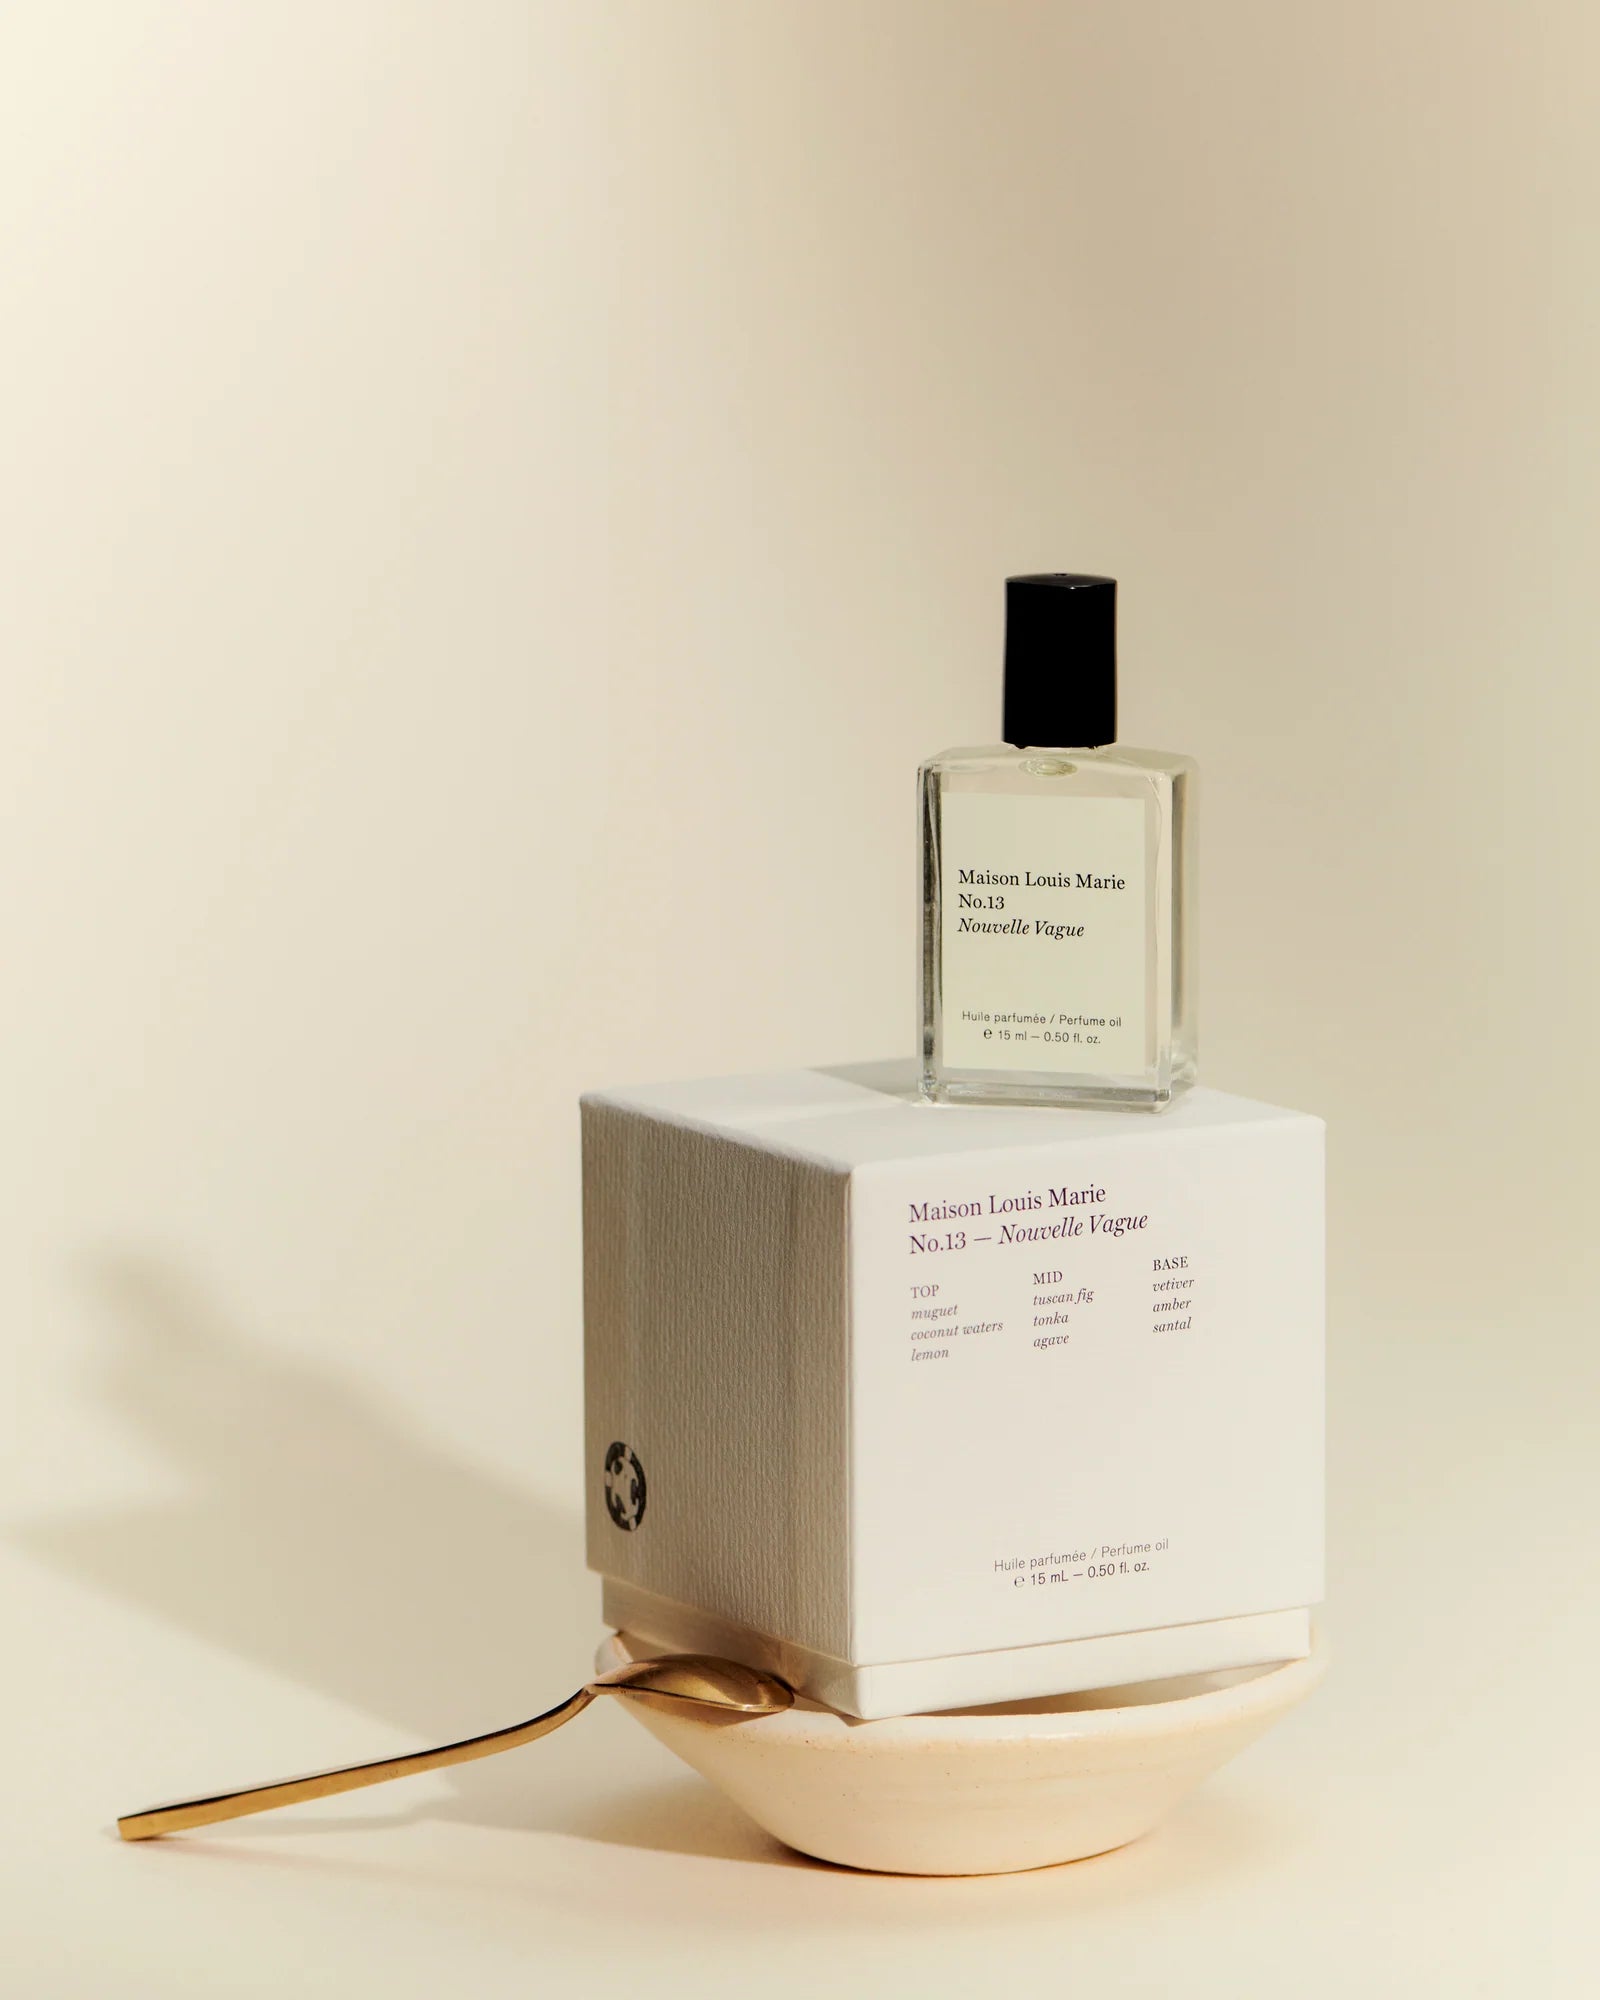 Perfume Oil | No.13 Nouvelle Vague